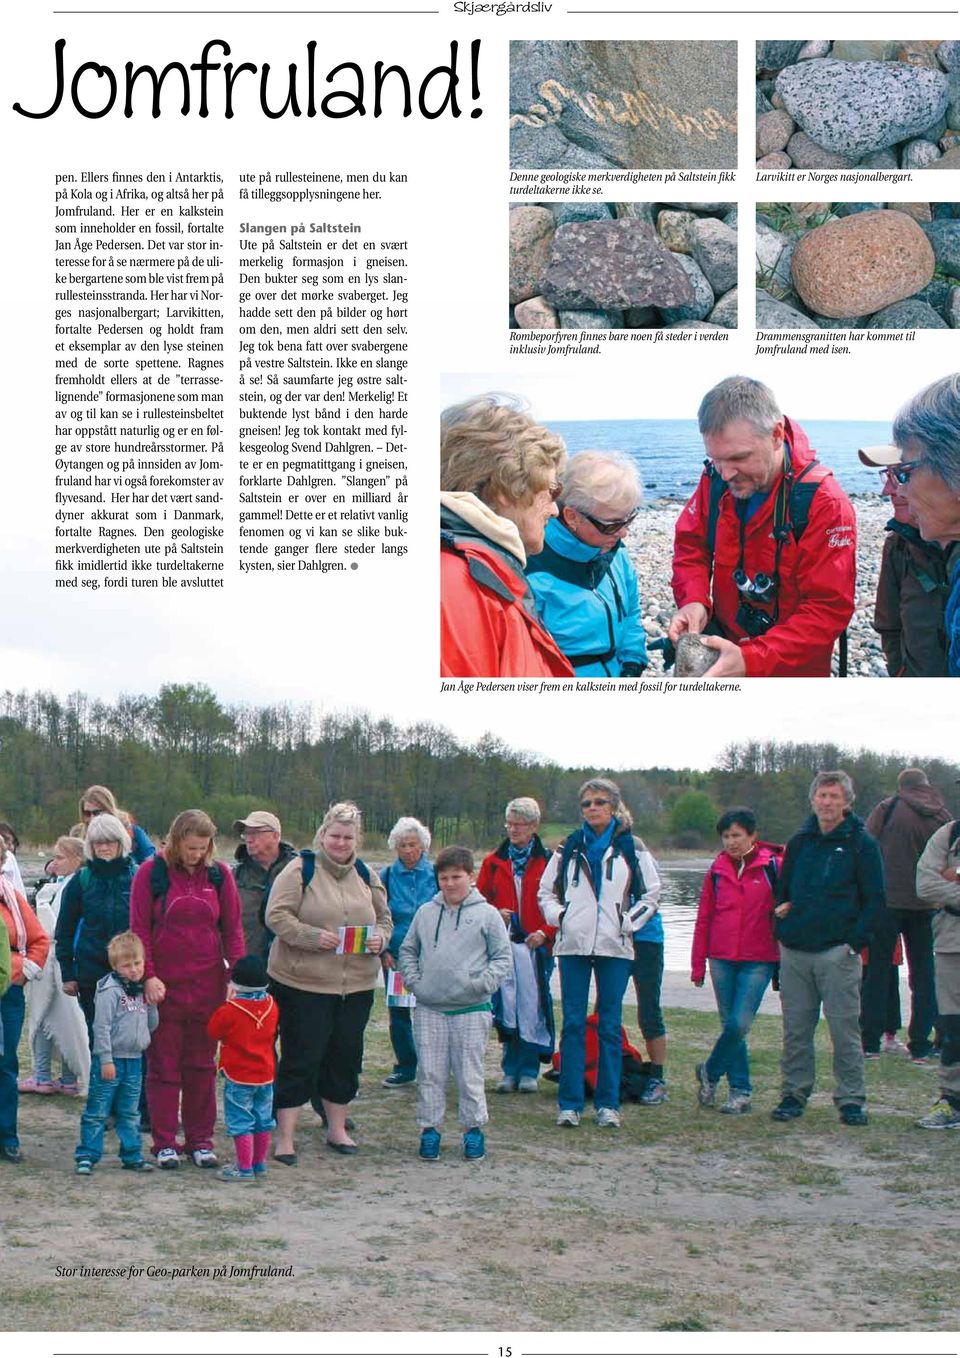 Her har vi Norges nasjonalbergart; Larvikitten, fortalte Pedersen og holdt fram et eksemplar av den lyse steinen med de sorte spettene.